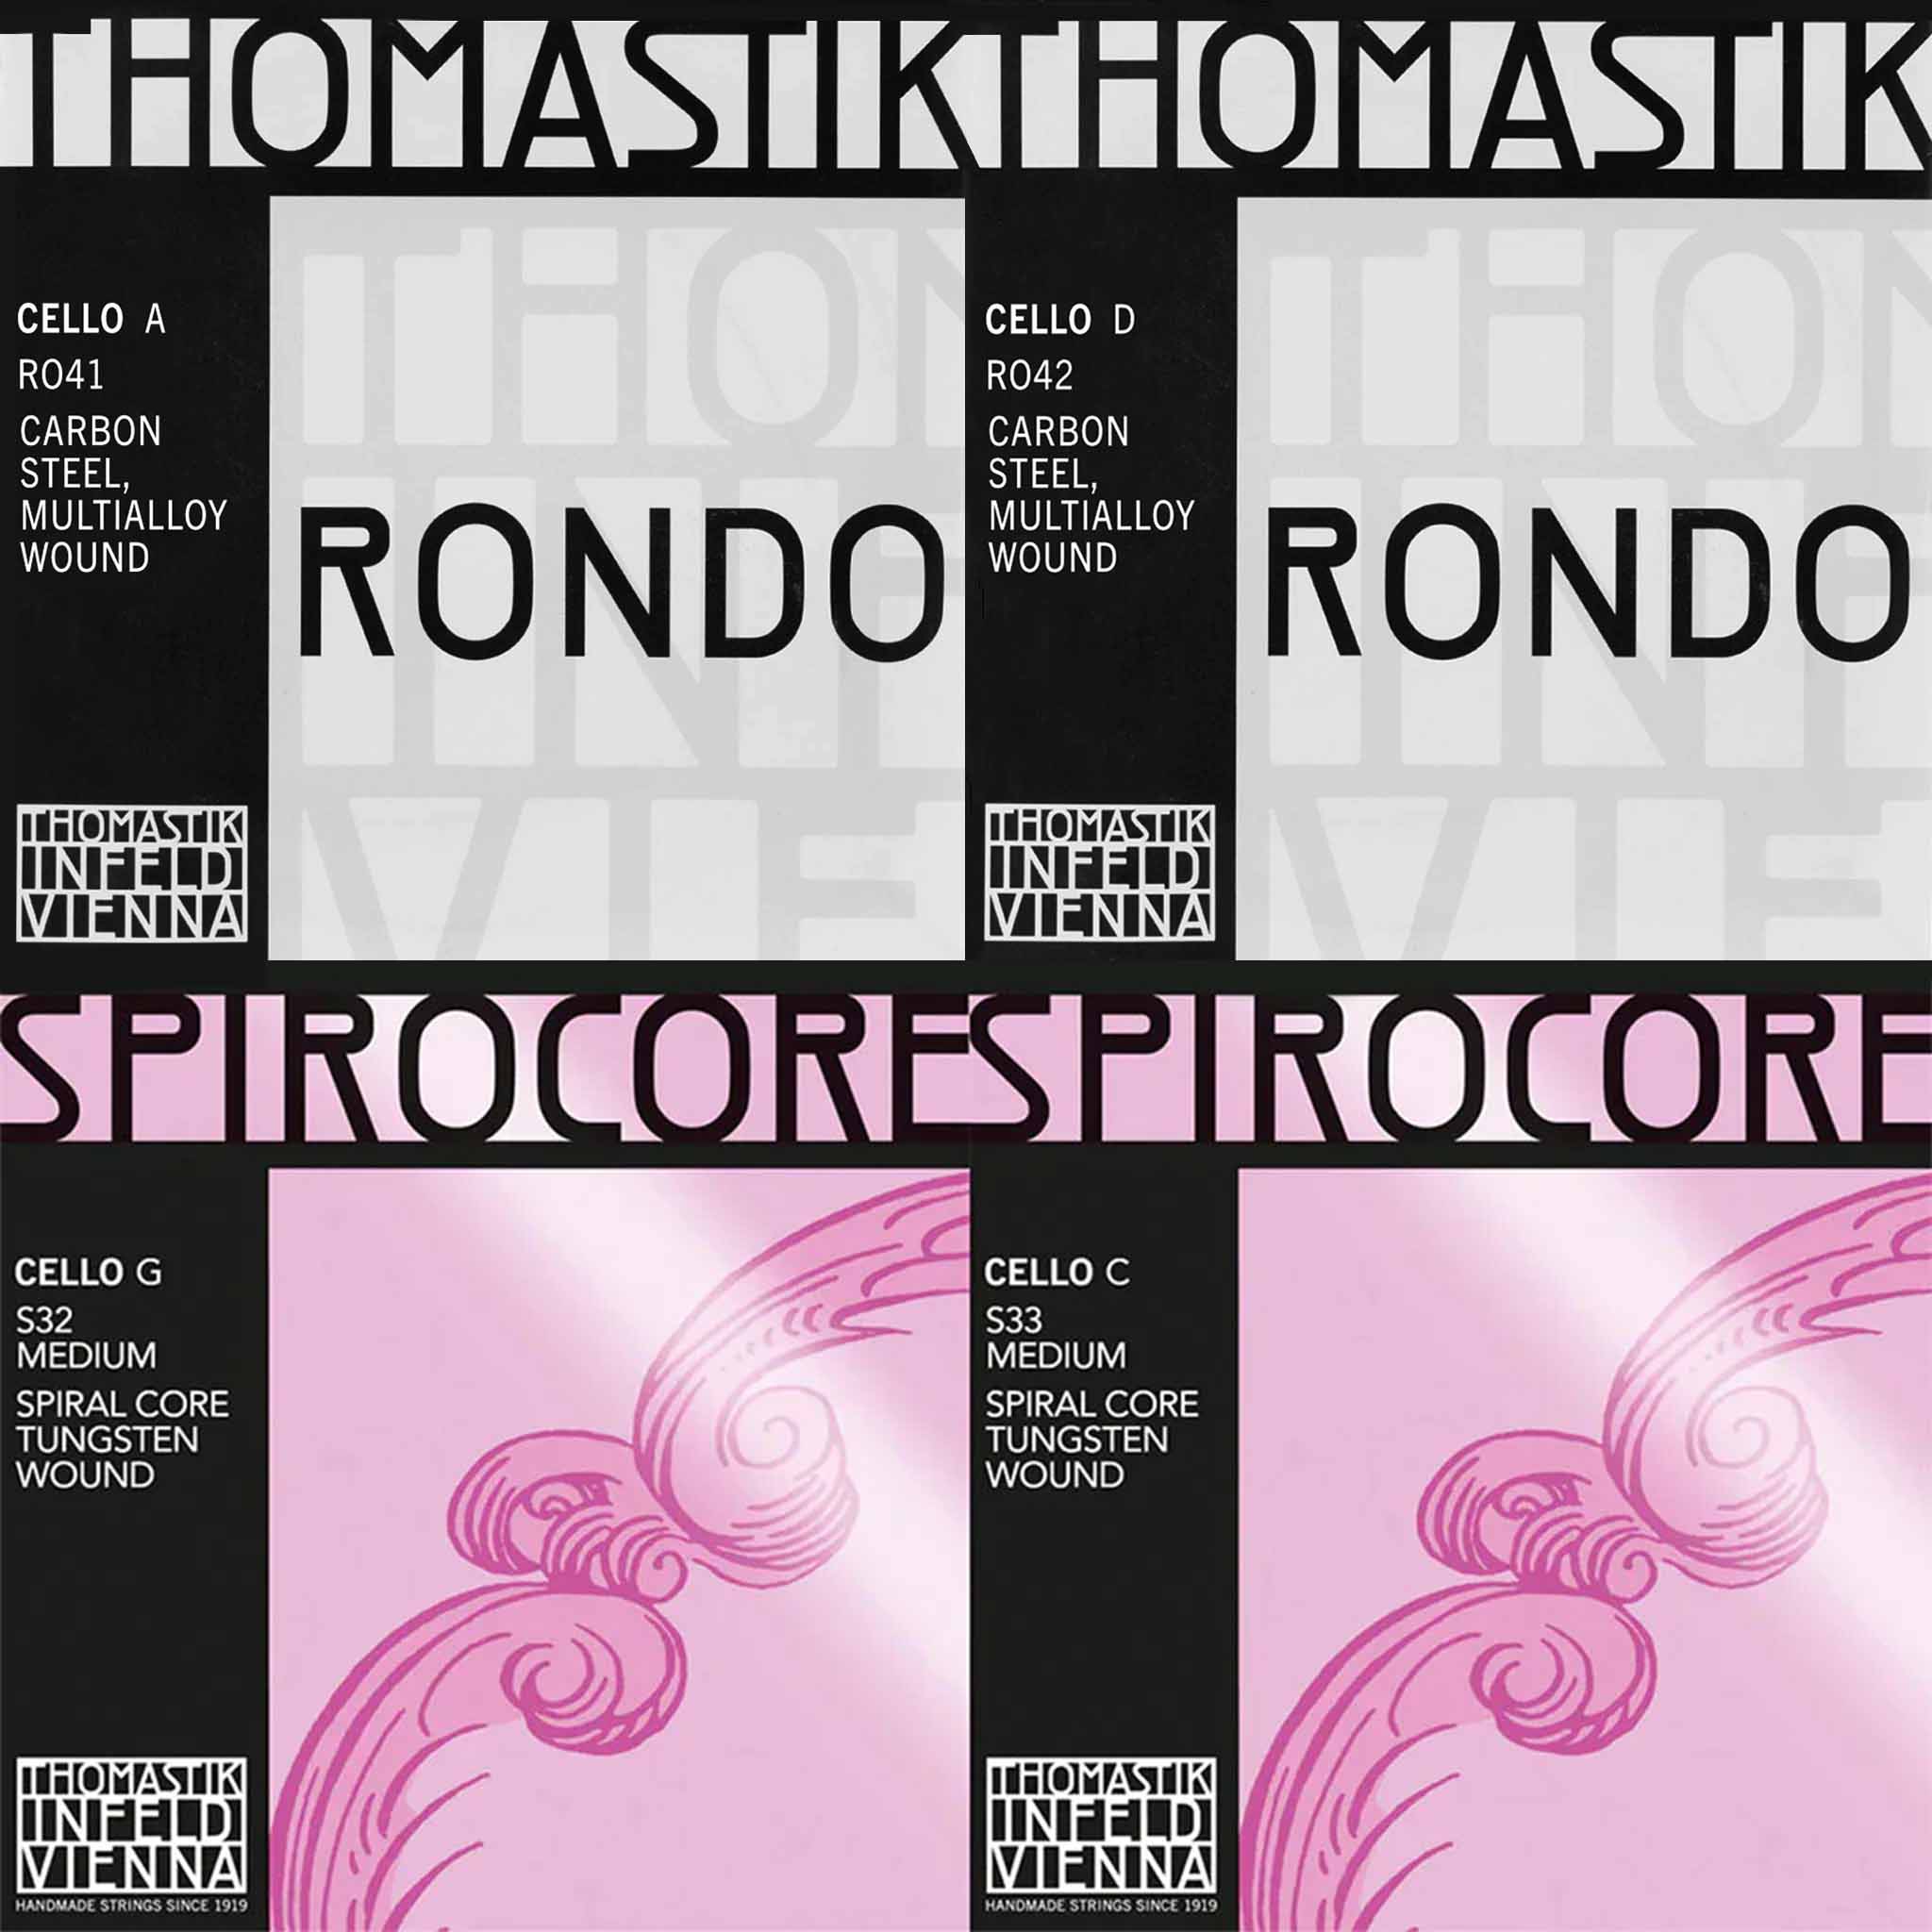 Thomastik "Spi-Rondo" Combo Cello String Set